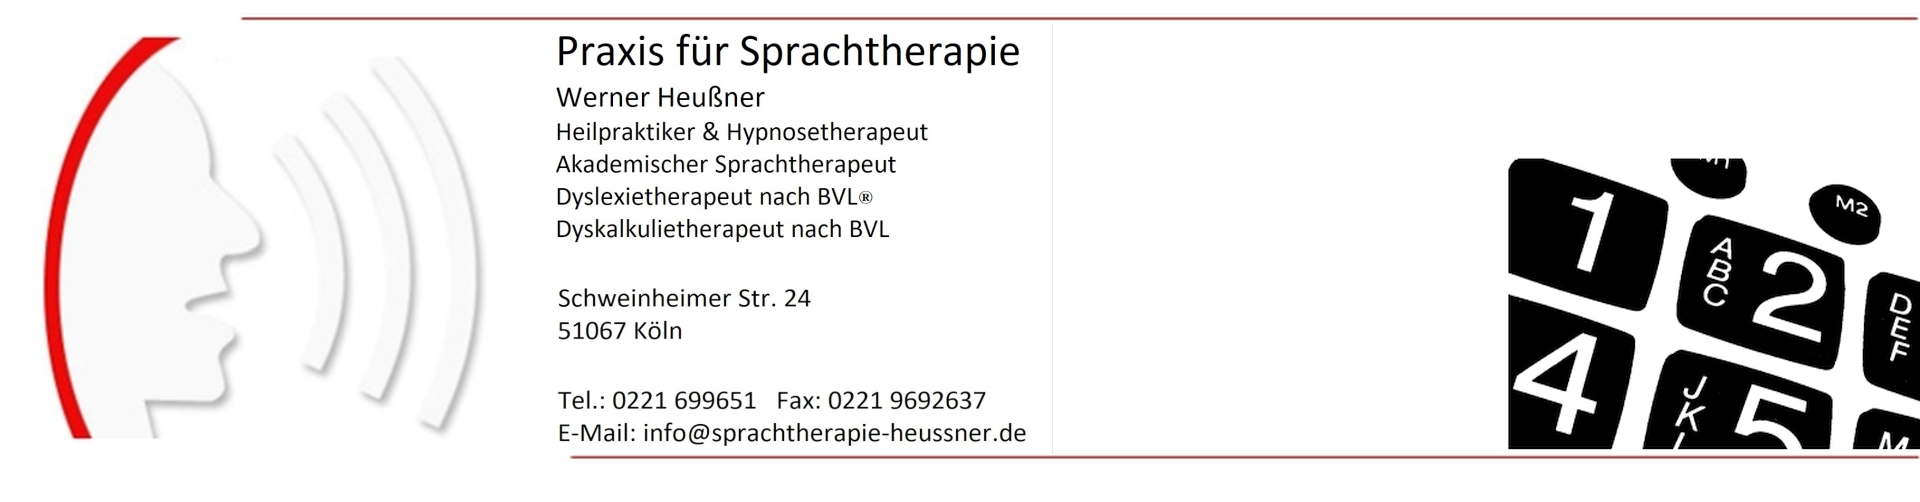 Praxis für Sprachtherapie Werner Heußner Köln